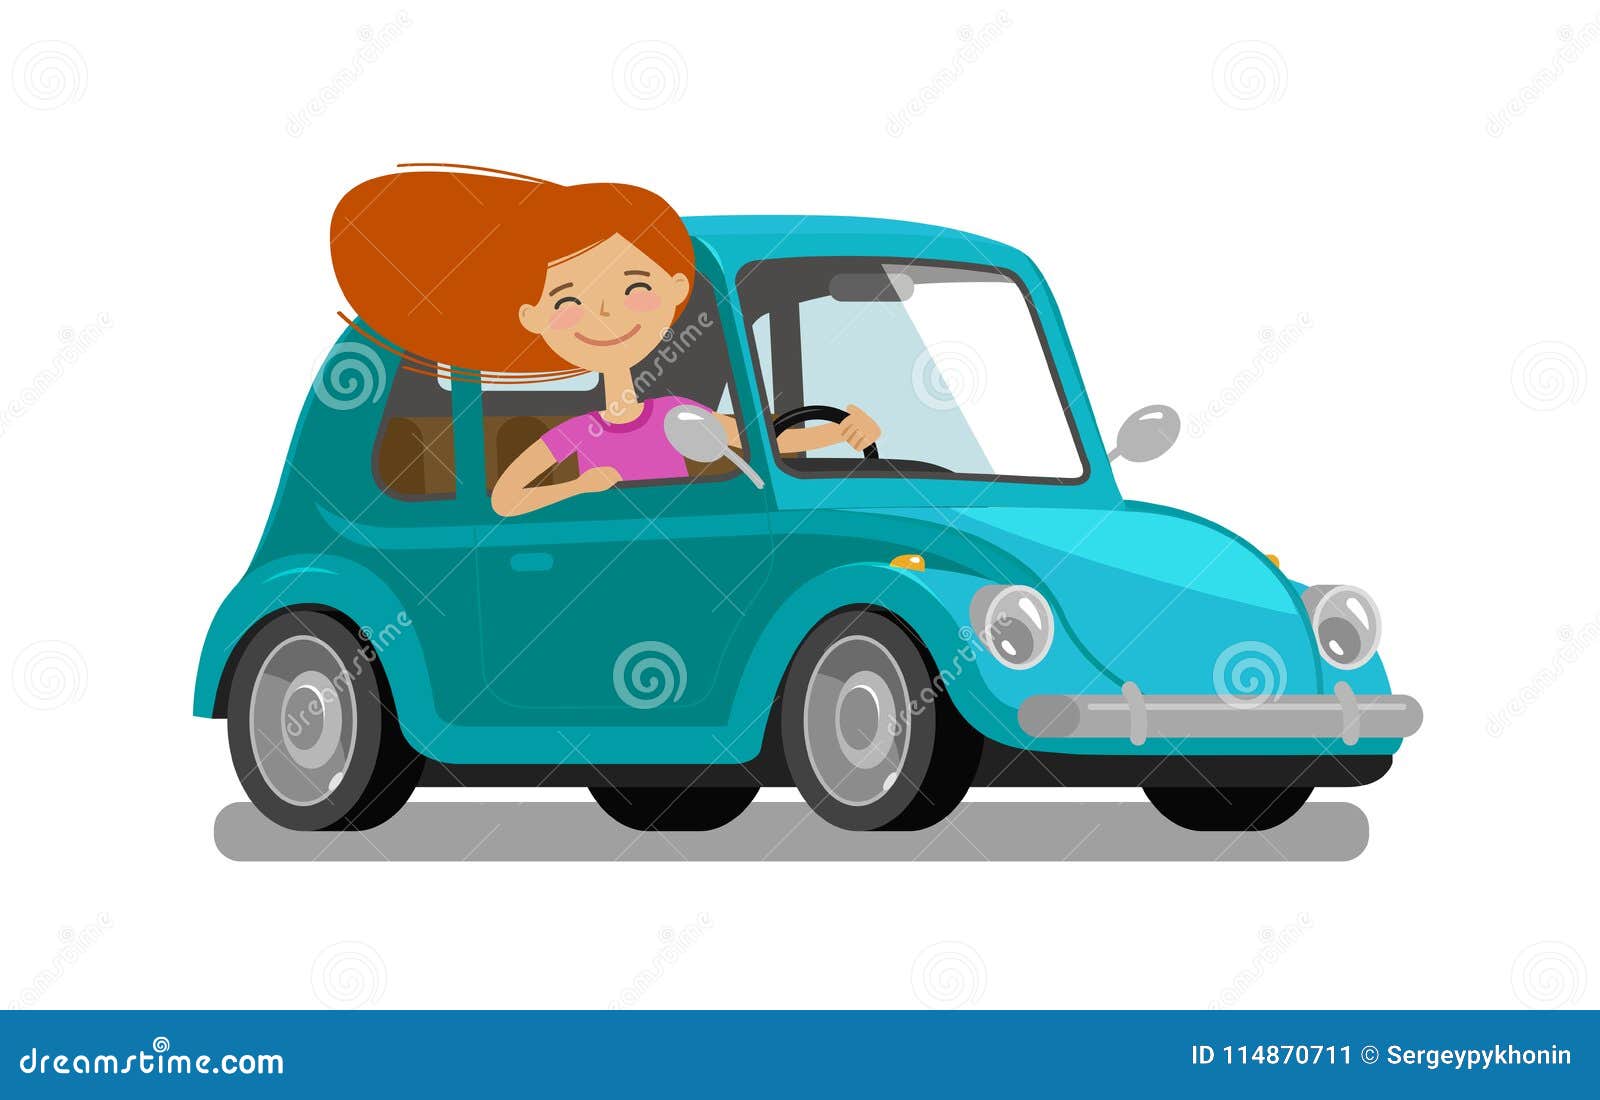 My mums car. Мультяшная машина с водителем. Мультяшный авто. Ребенок едет на машине вектор. Девочка едет на машинке.